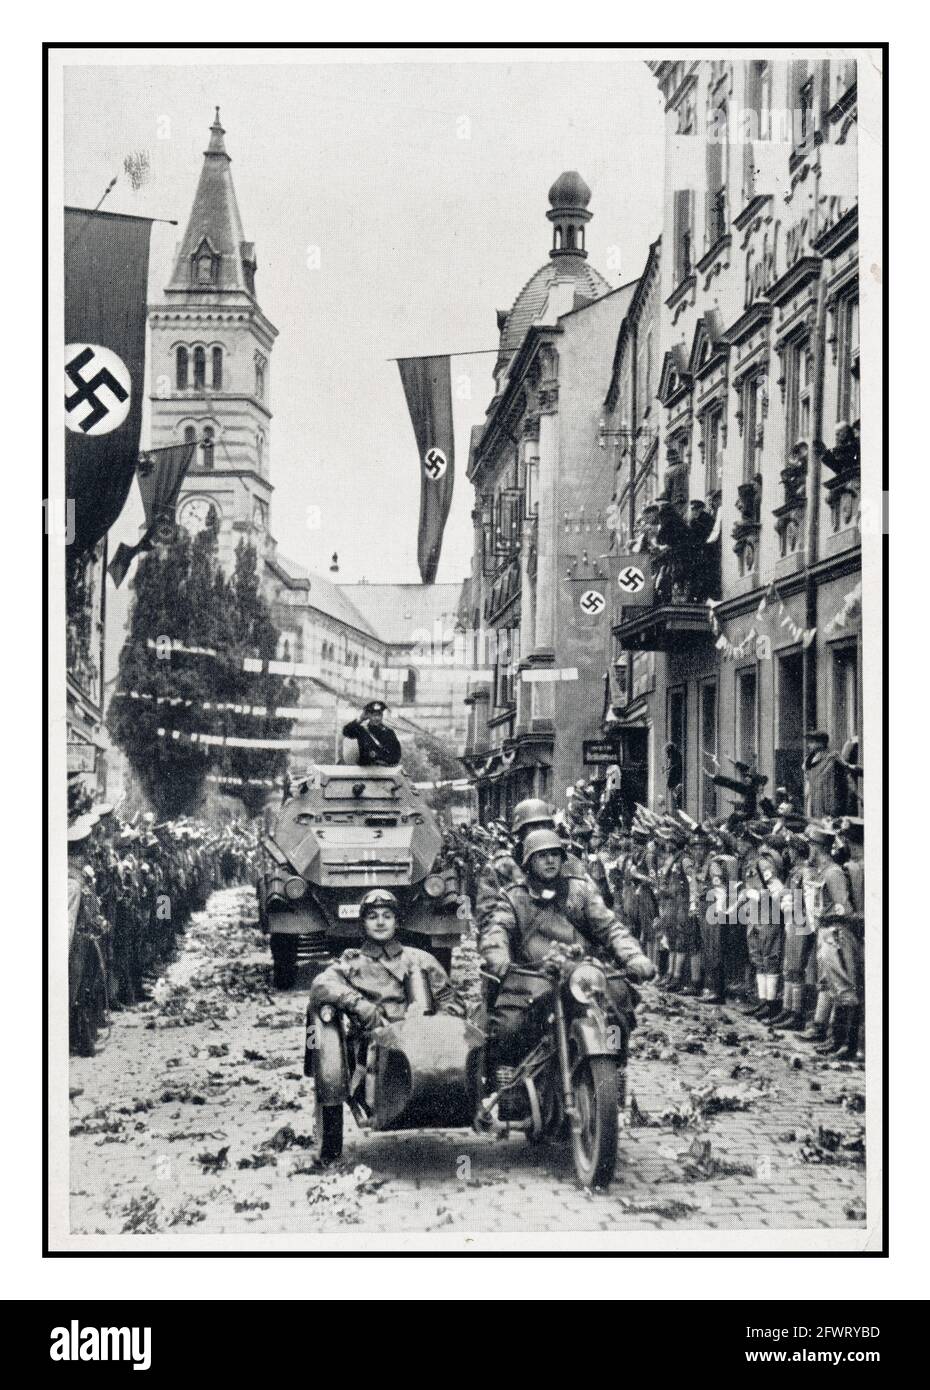 SUDETENLAND 1938 sfilata militare nazista a Kraslice (Graslitz) dopo l'annessione della Sudetenland nell'ottobre 1938 alcuni residenti locali accolgono i nazisti con bandiere, bandiere e fiori Swastika gettati sulla strada Foto Stock